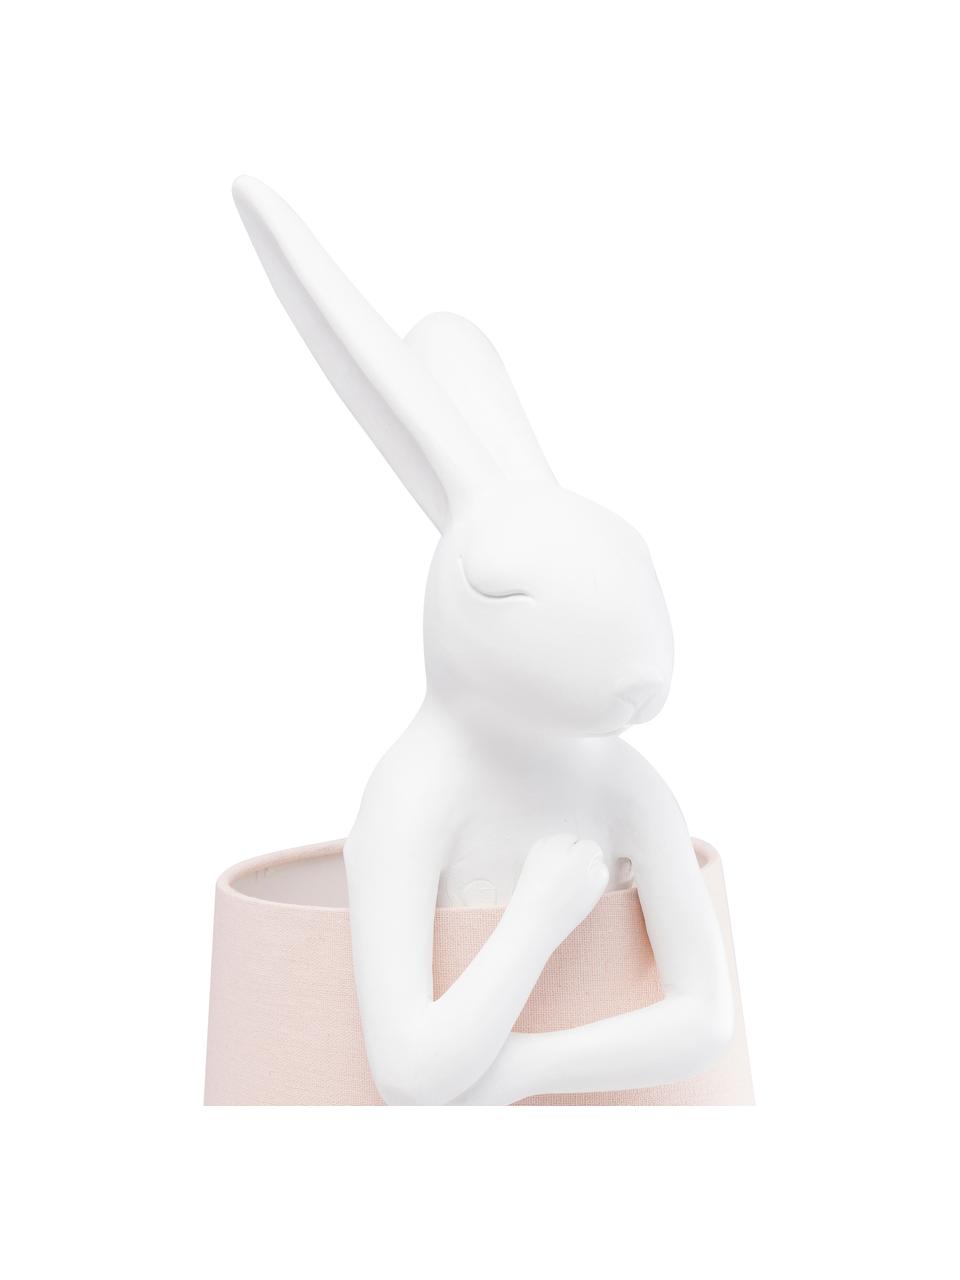 Große Design Tischlampe Rabbit in Rosa, Lampenschirm: Leinen, Lampenfuß: Polyresin, Stange: Stahl, pulverbeschichtet, Weiß, Rosa, Ø 23 x H 68 cm